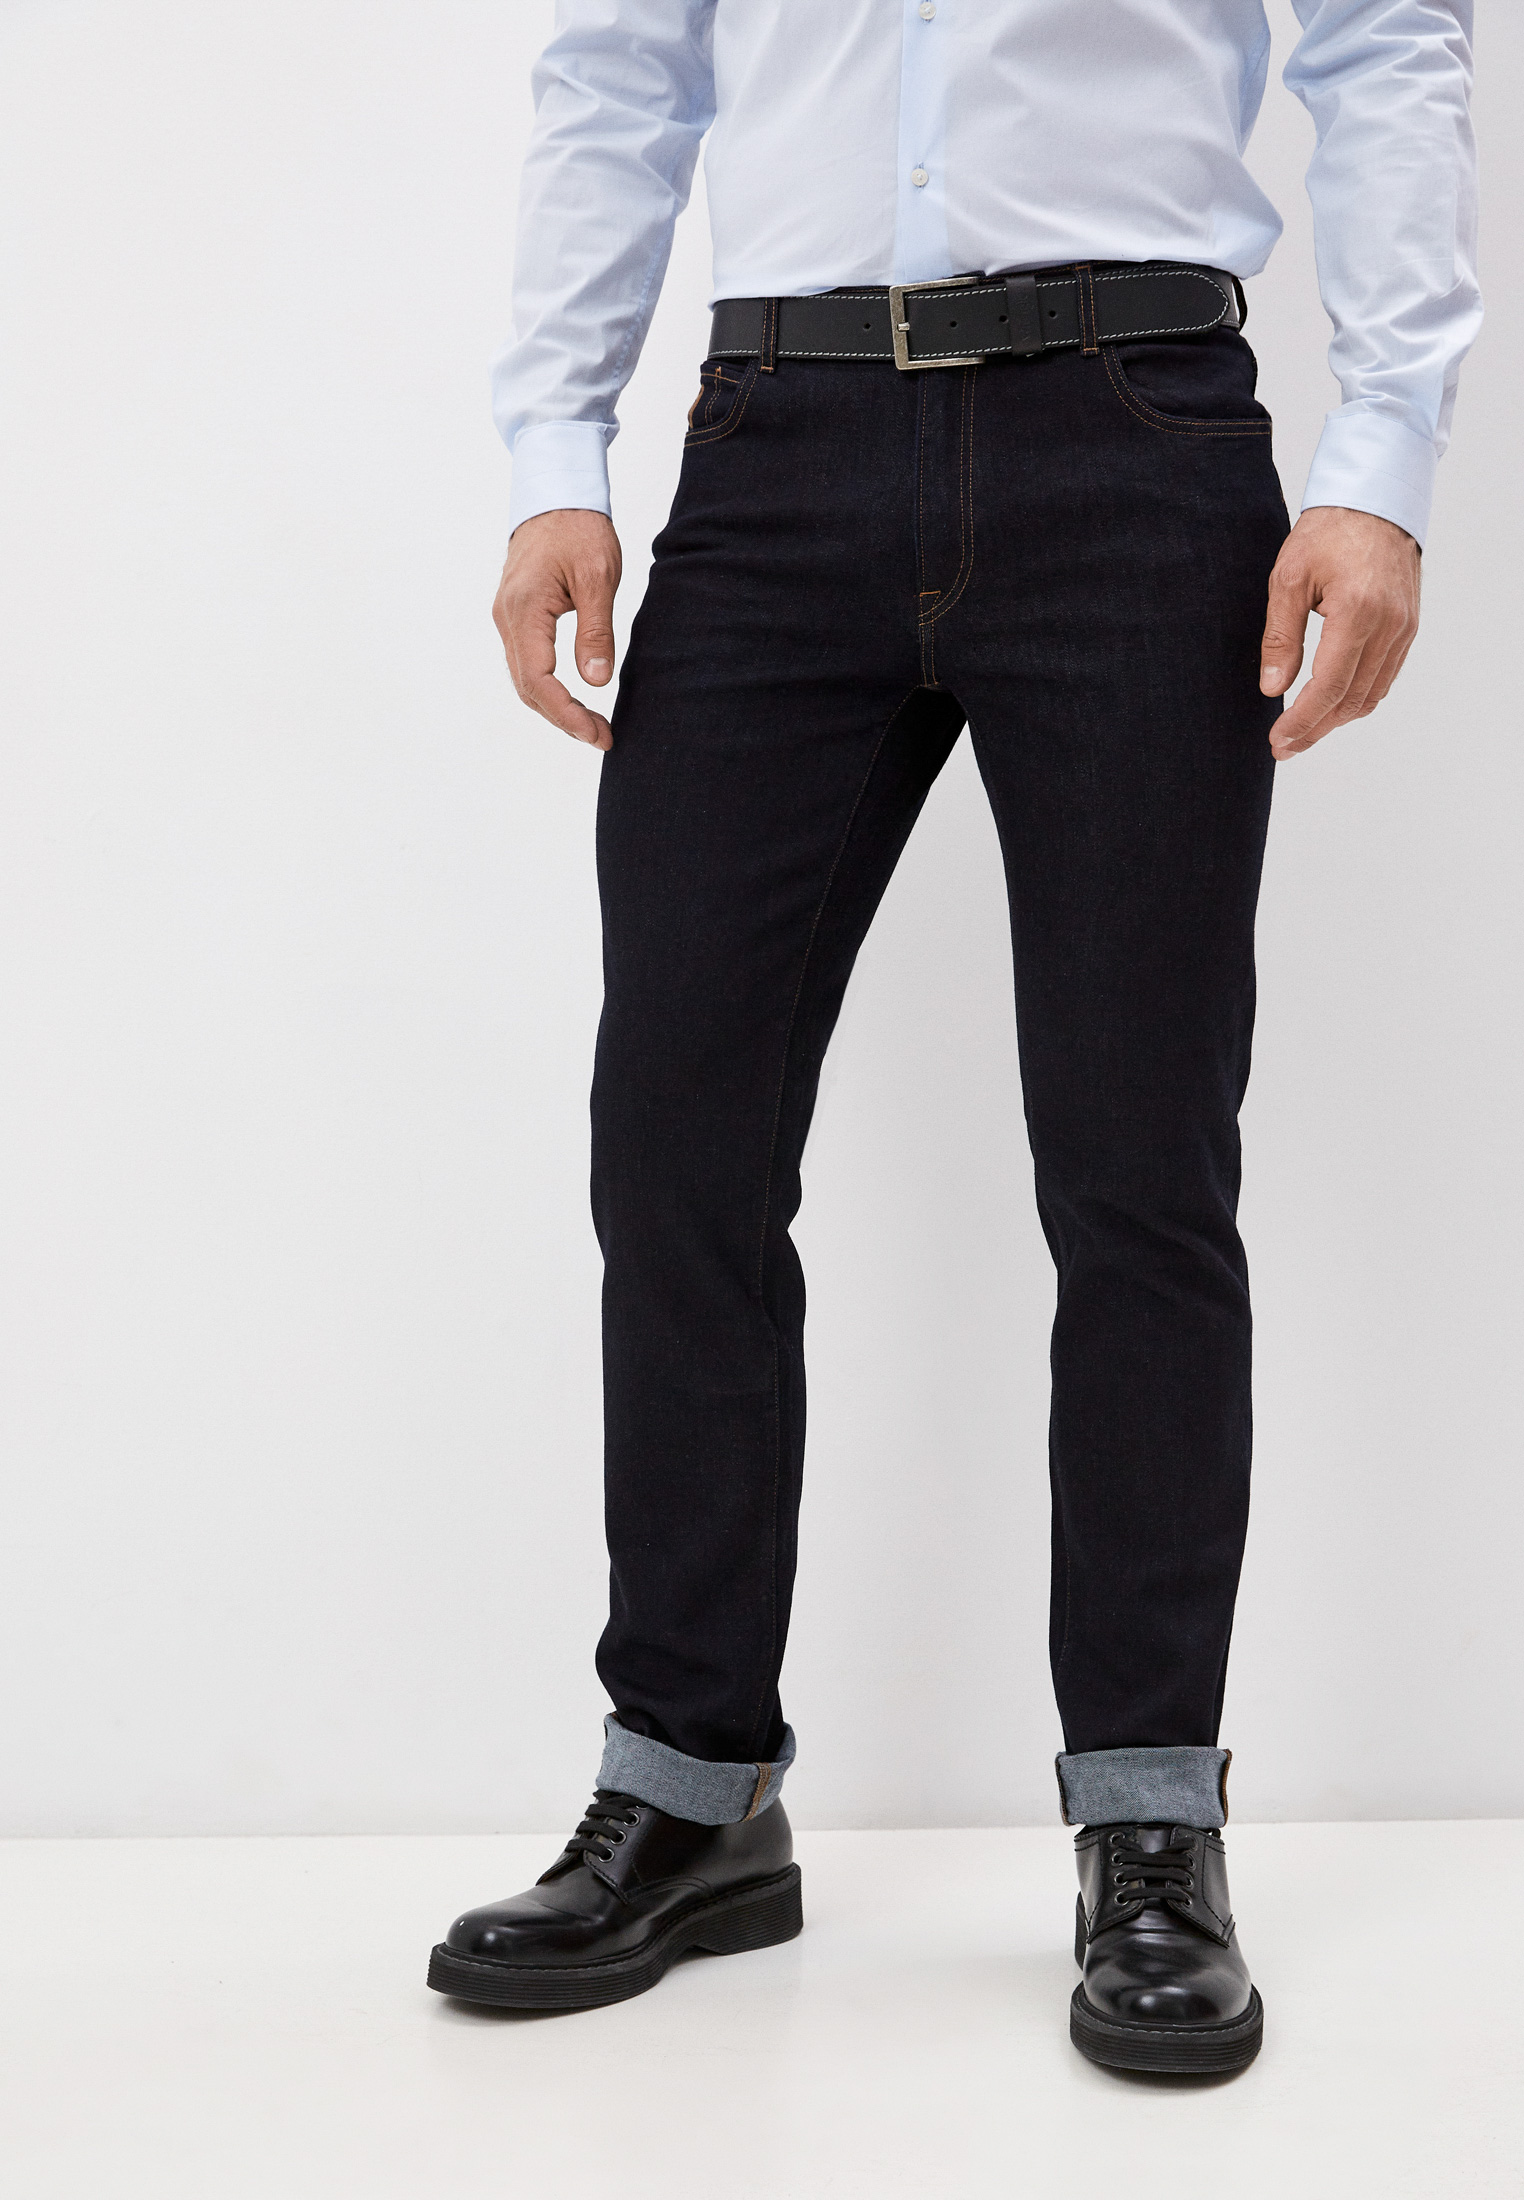 Мужские зауженные джинсы Trussardi (Труссарди) 52J00001-1Y000186: изображение 1